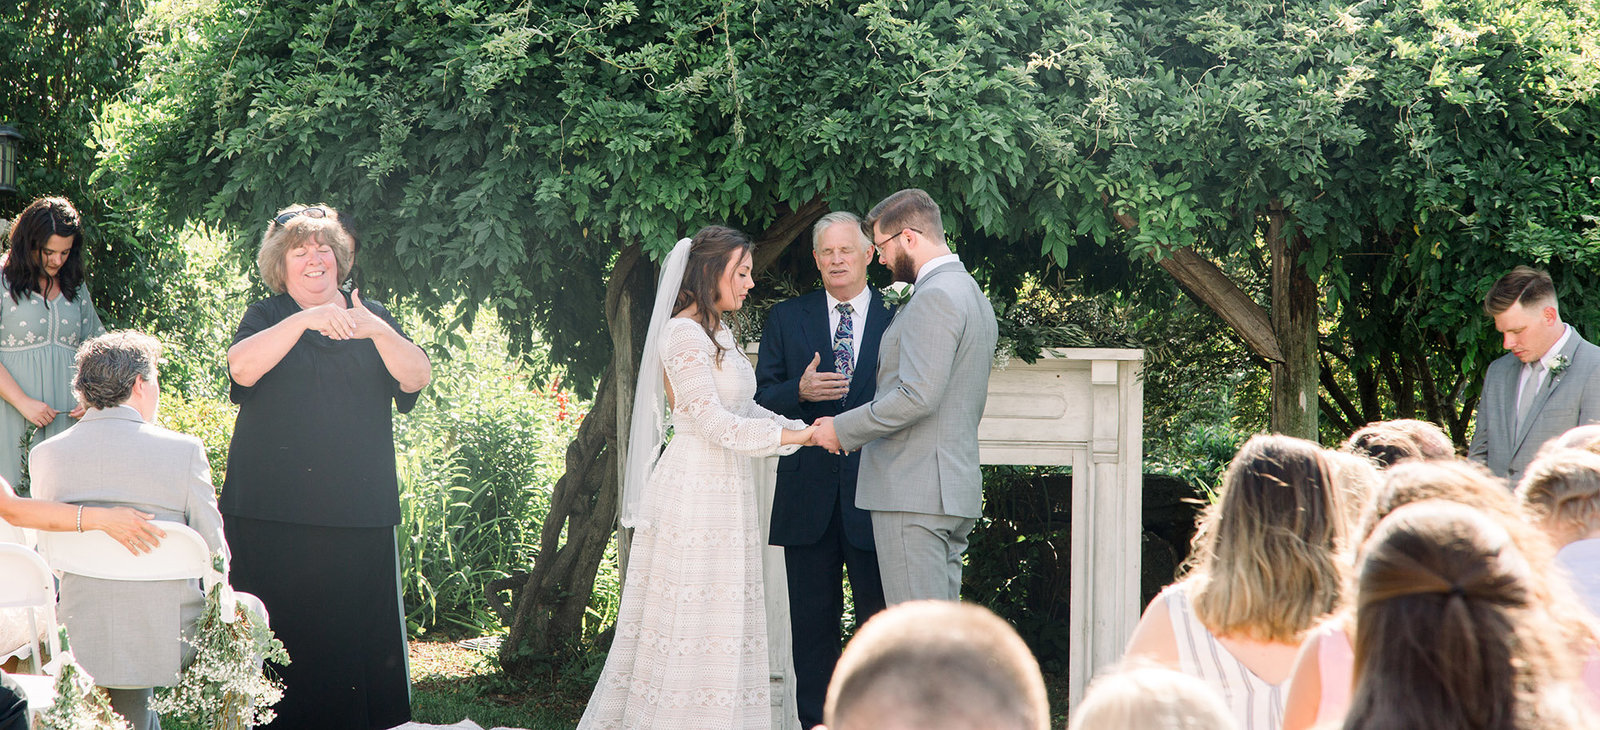 Wedding ceremony in Virginia